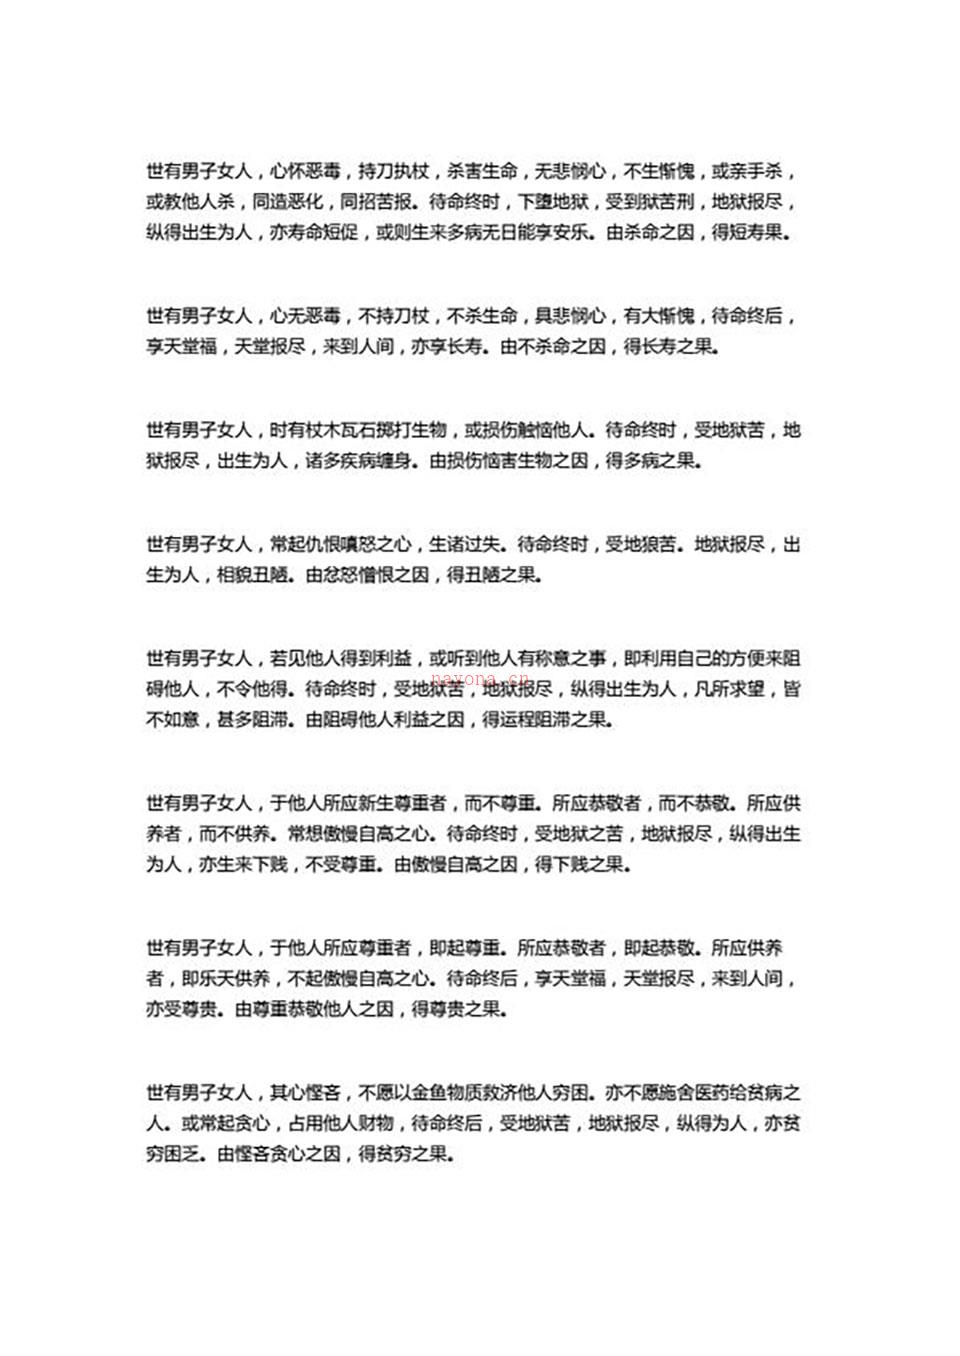 邵伟华-人的命运是自己造就的12页.pdf 百度网盘资源